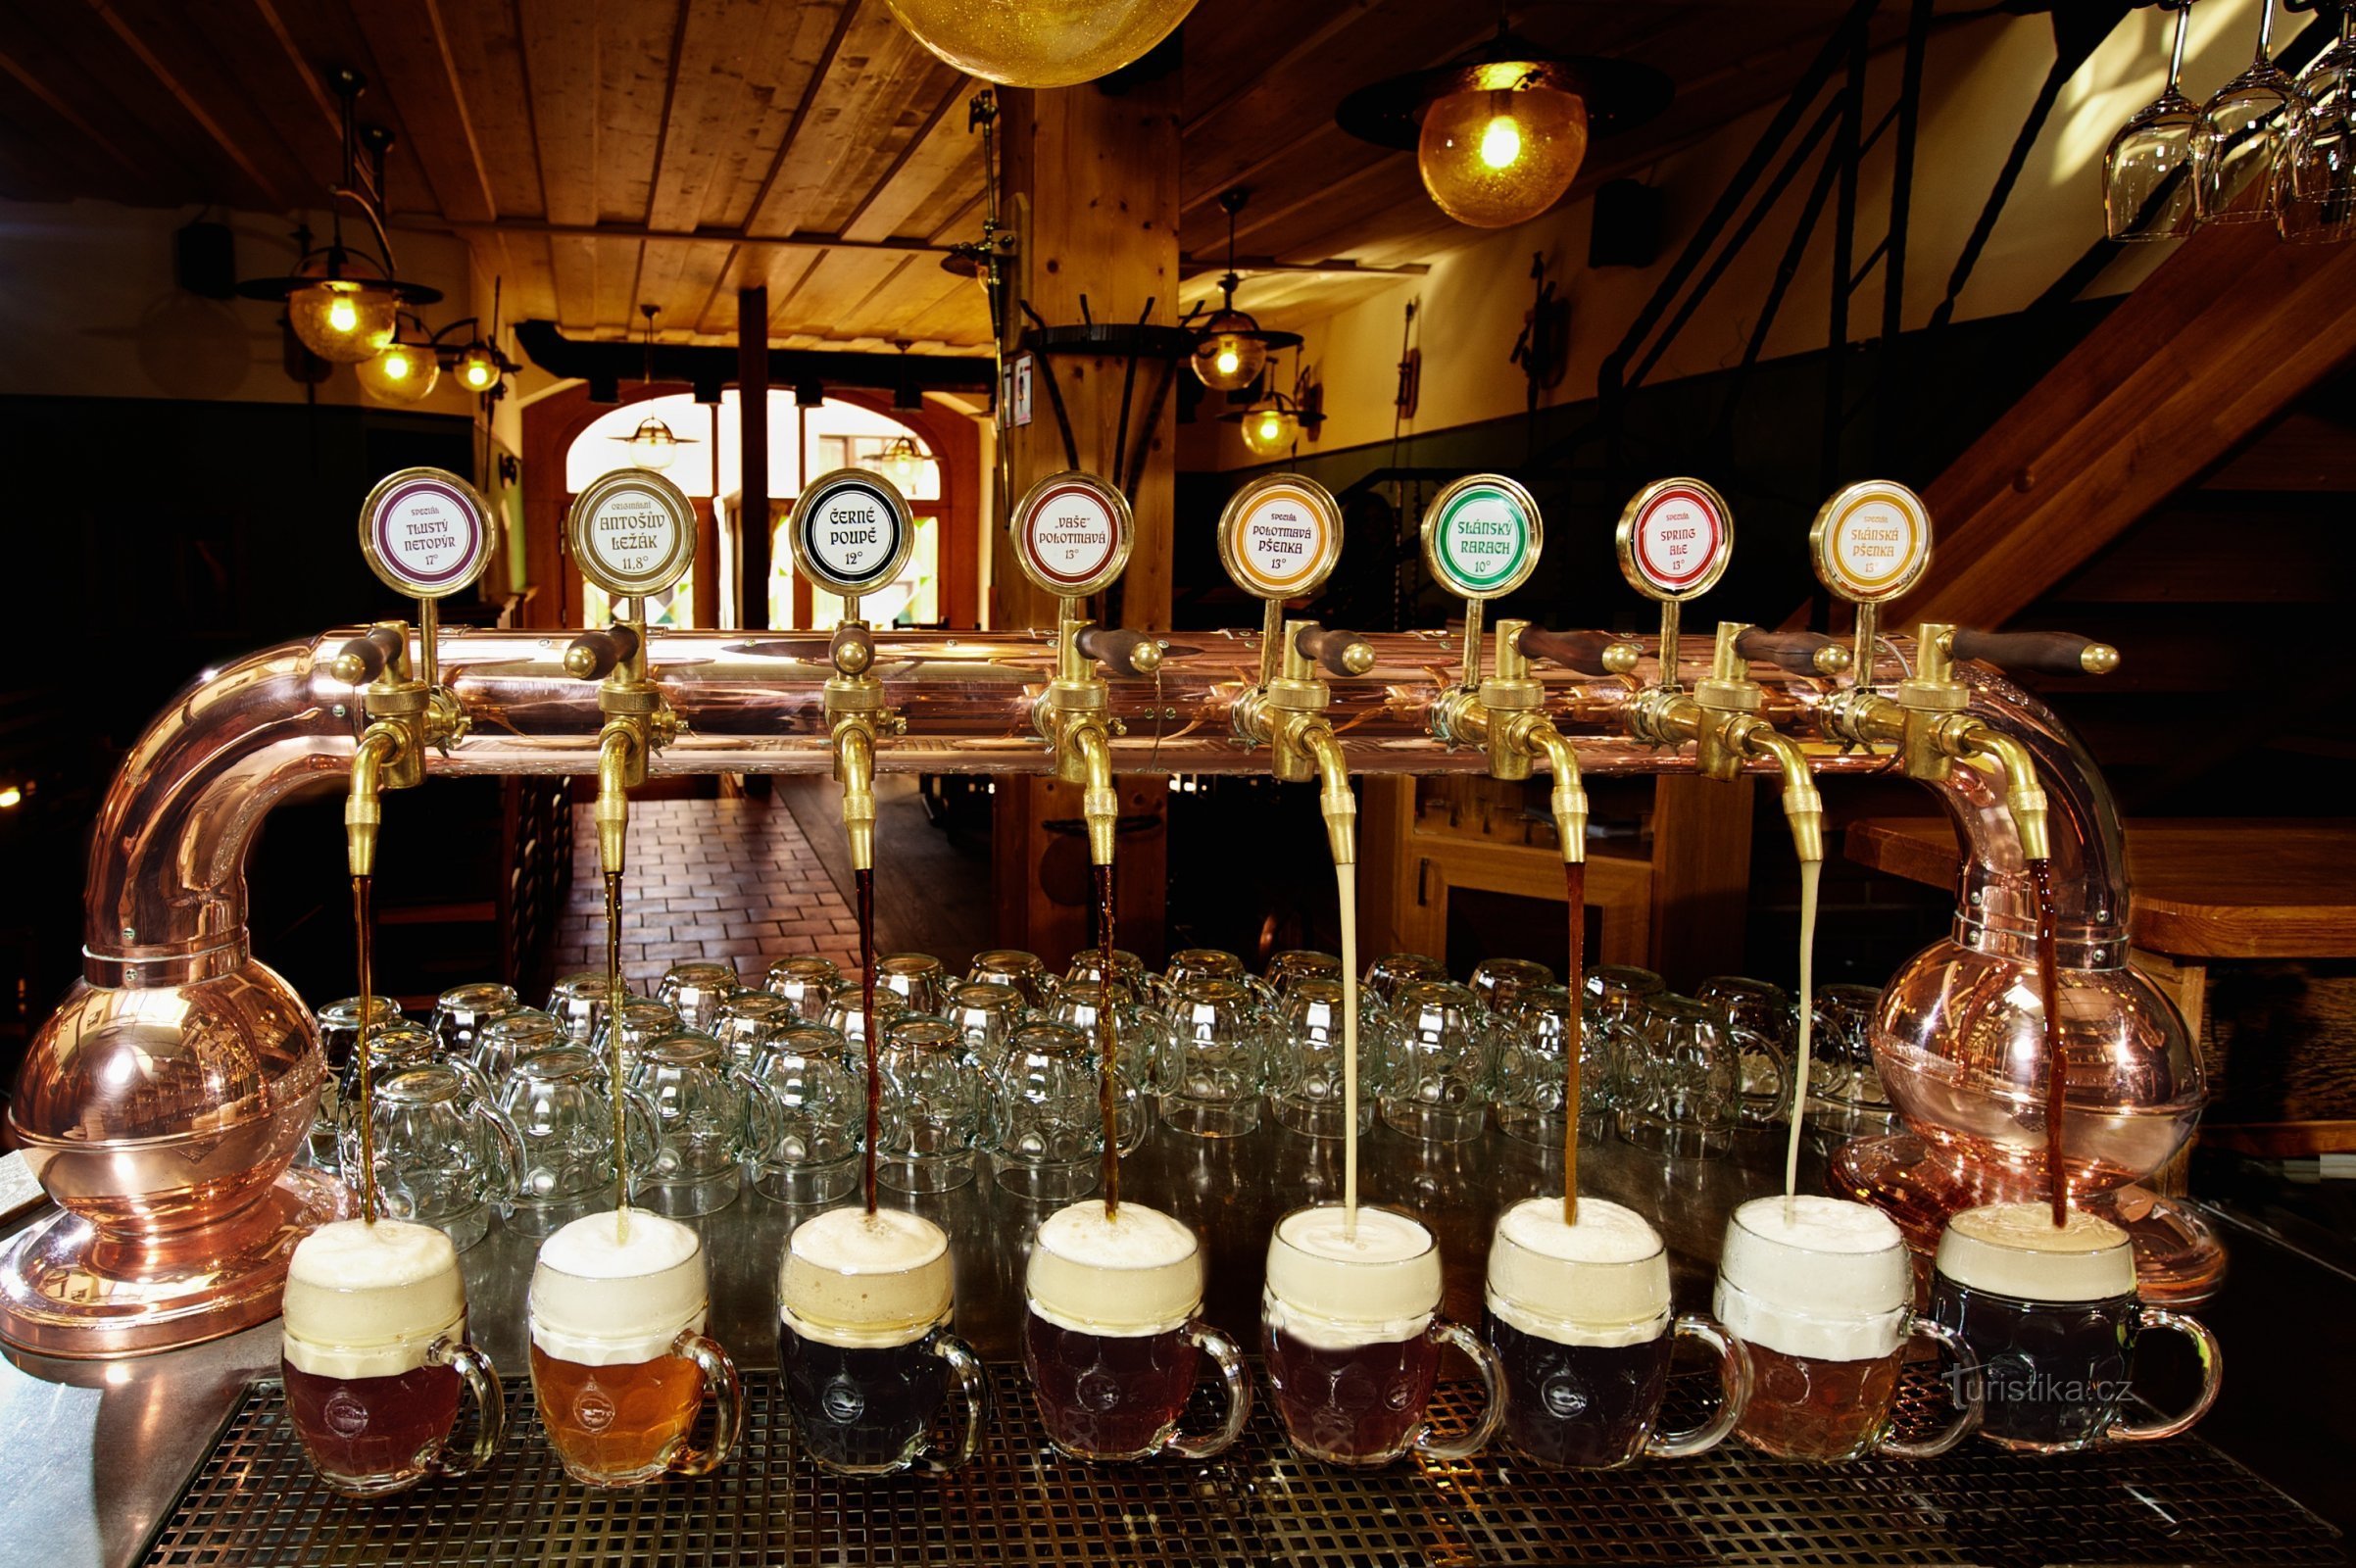 Antoš's bryggeri